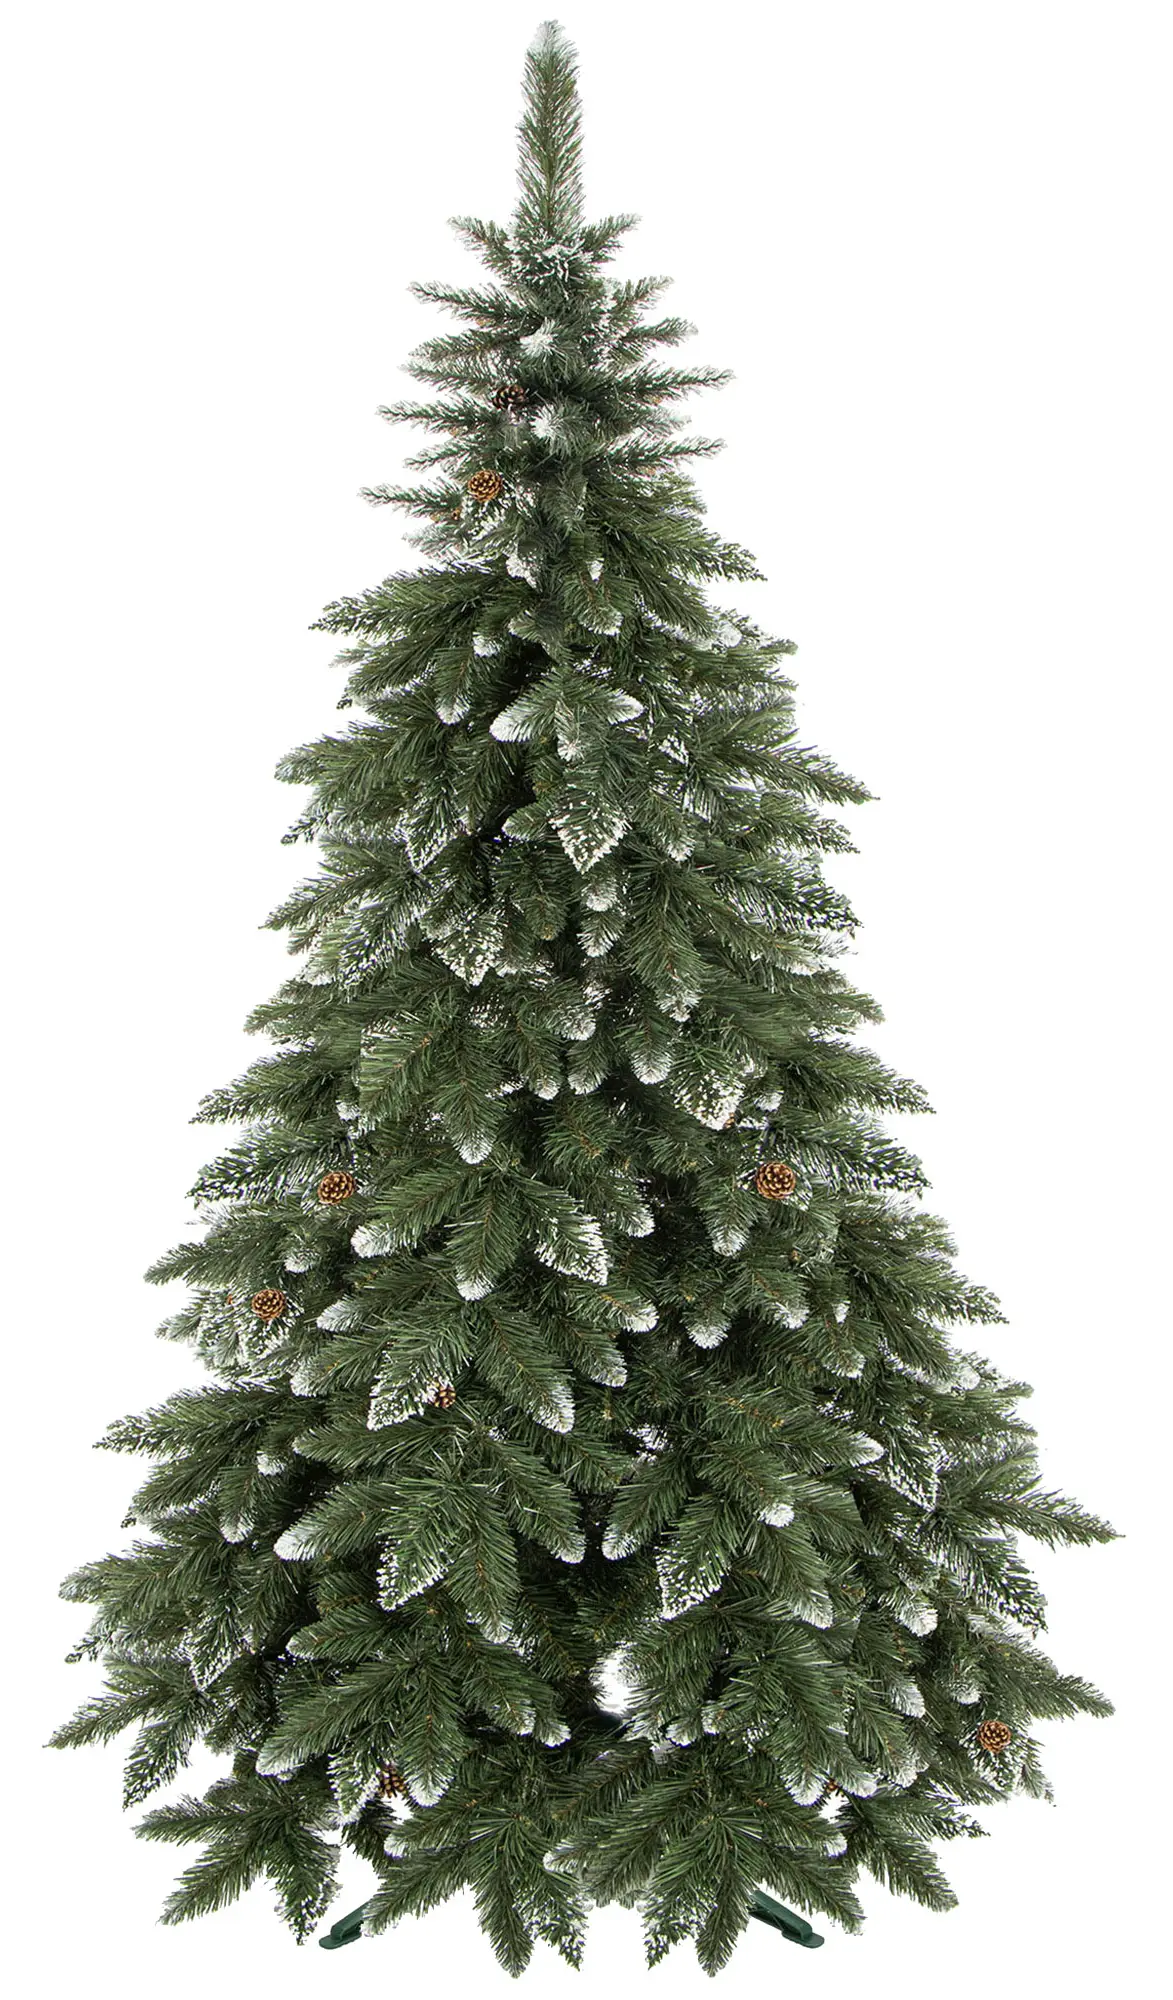 K眉nstlicher Weihnachtsbaum 220 cm | Weihnachtsbäume